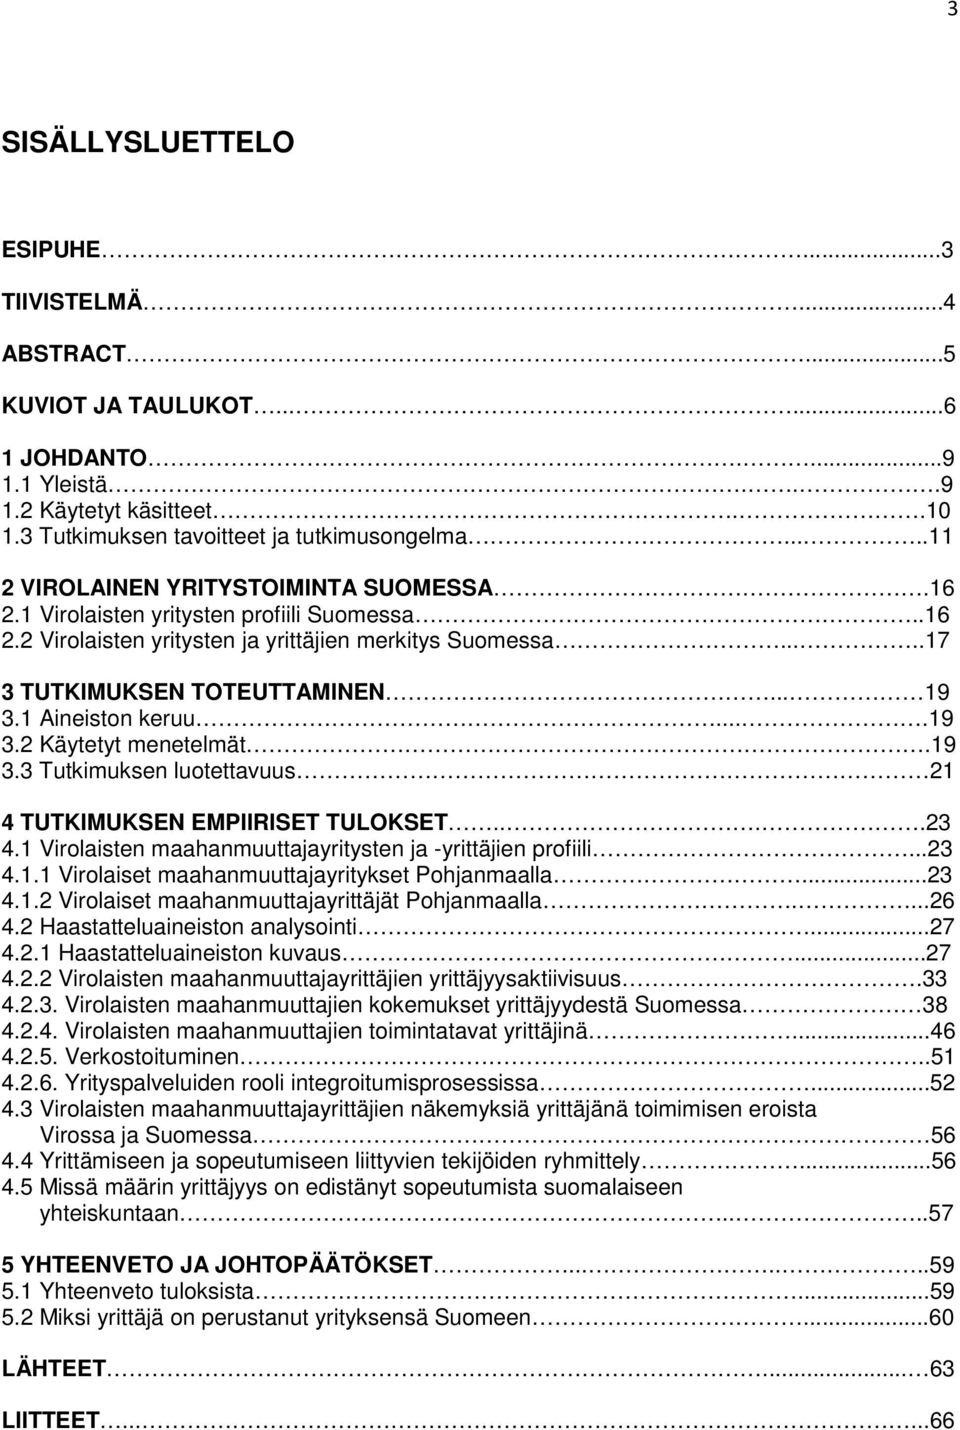 1 Aineiston keruu....19 3.2 Käytetyt menetelmät.19 3.3 Tutkimuksen luotettavuus 21 4 TUTKIMUKSEN EMPIIRISET TULOKSET....23 4.1 Virolaisten maahanmuuttajayritysten ja -yrittäjien profiili...23 4.1.1 Virolaiset maahanmuuttajayritykset Pohjanmaalla.